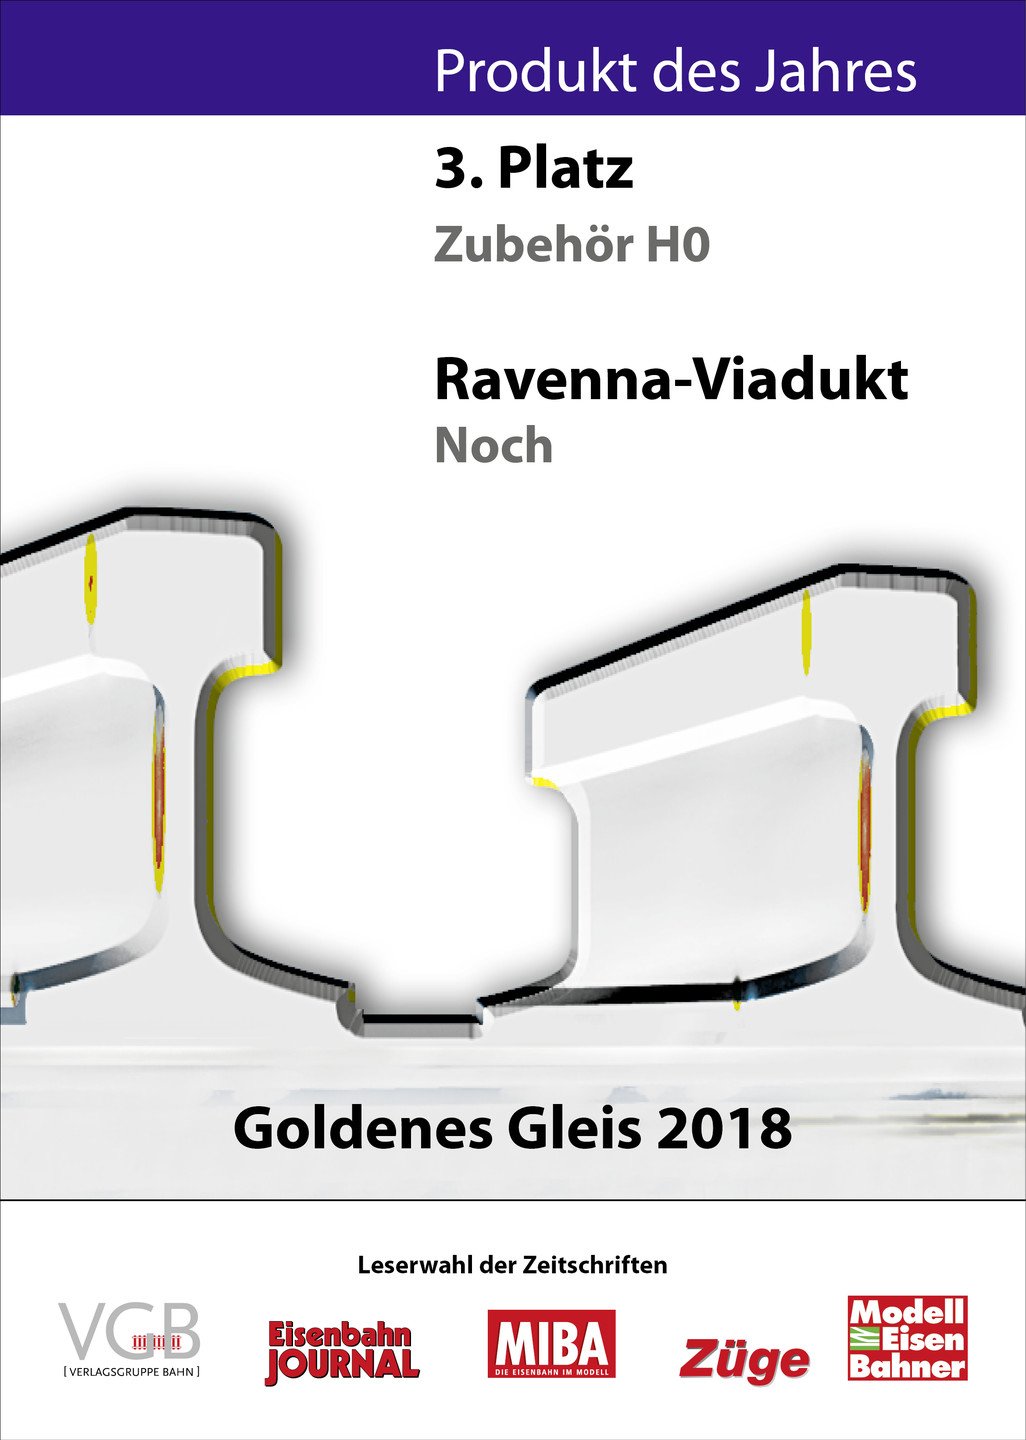 Goldenes Gleis 2018 Auszeichnung 